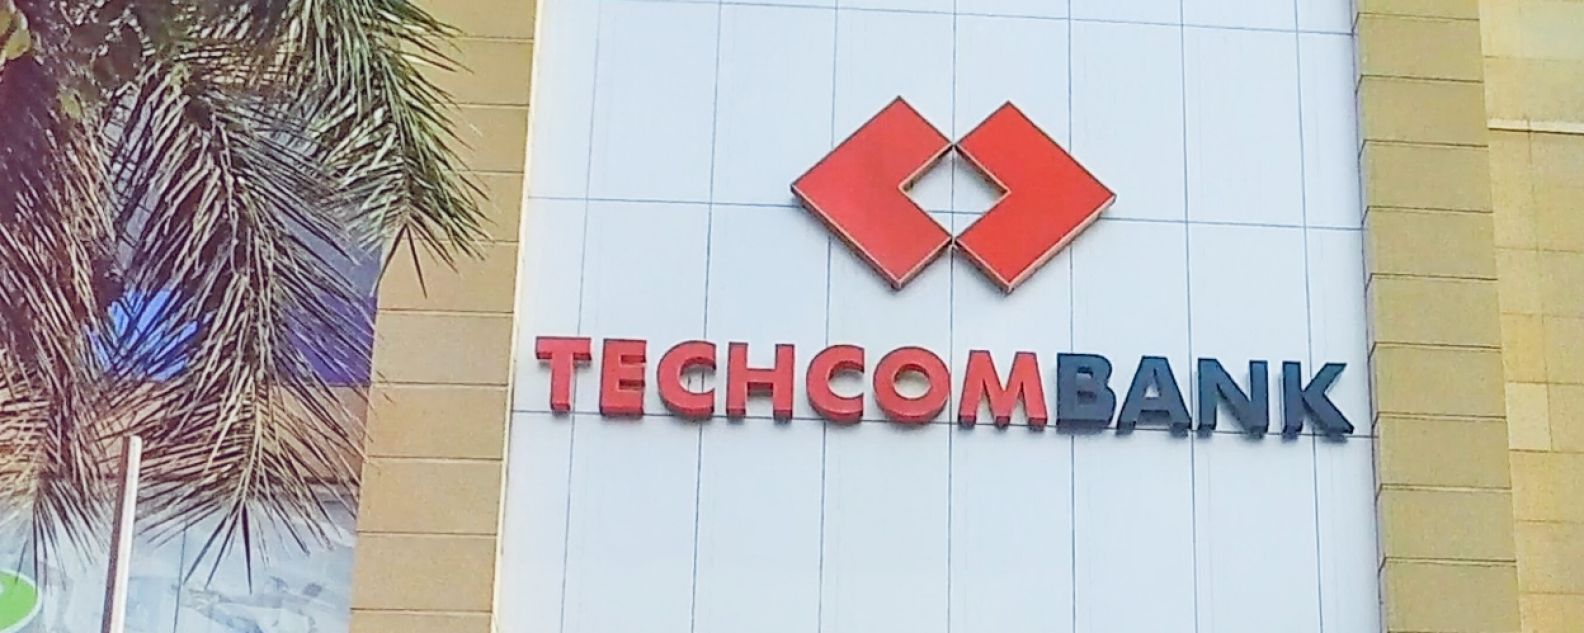 Extérieur du bâtiment de Techcombank